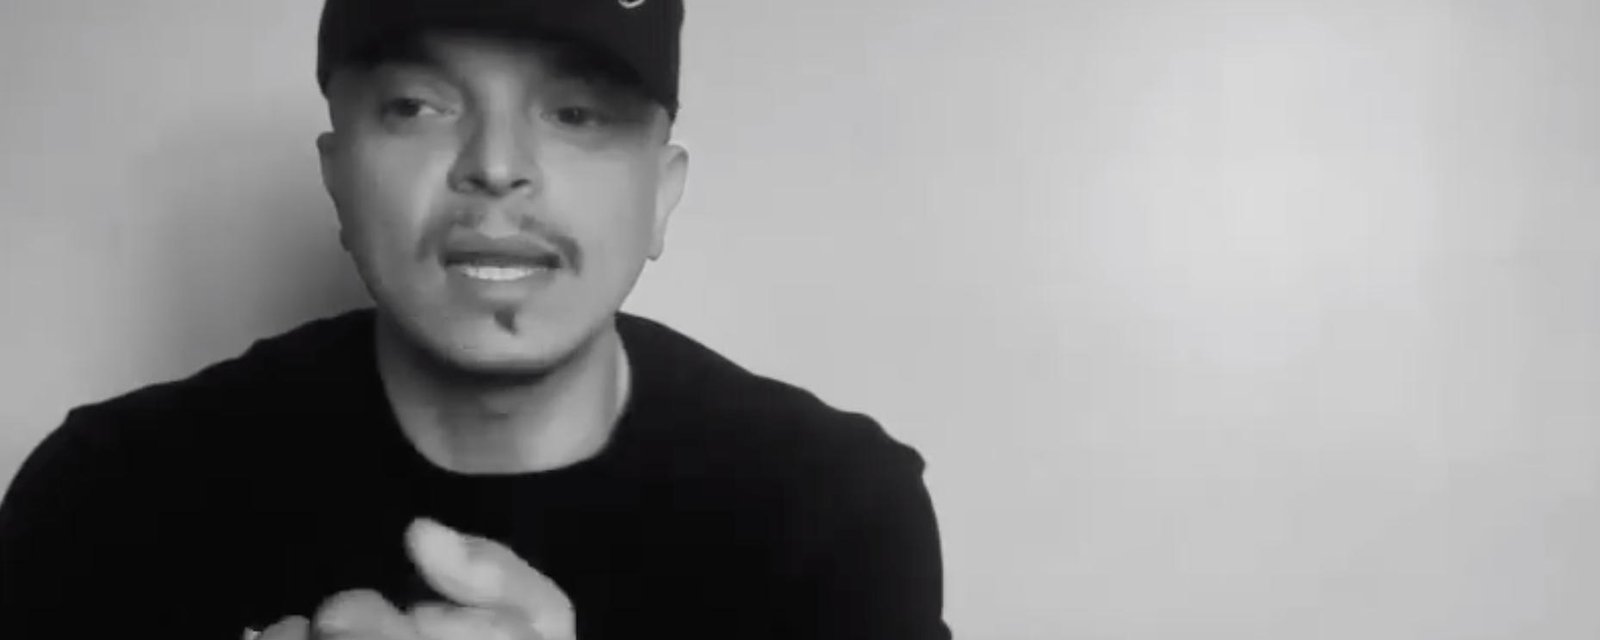 Rachid Badouri publie une rare vidéo sérieuse où il s'ouvre avec transparence «J'ai peur, man!»